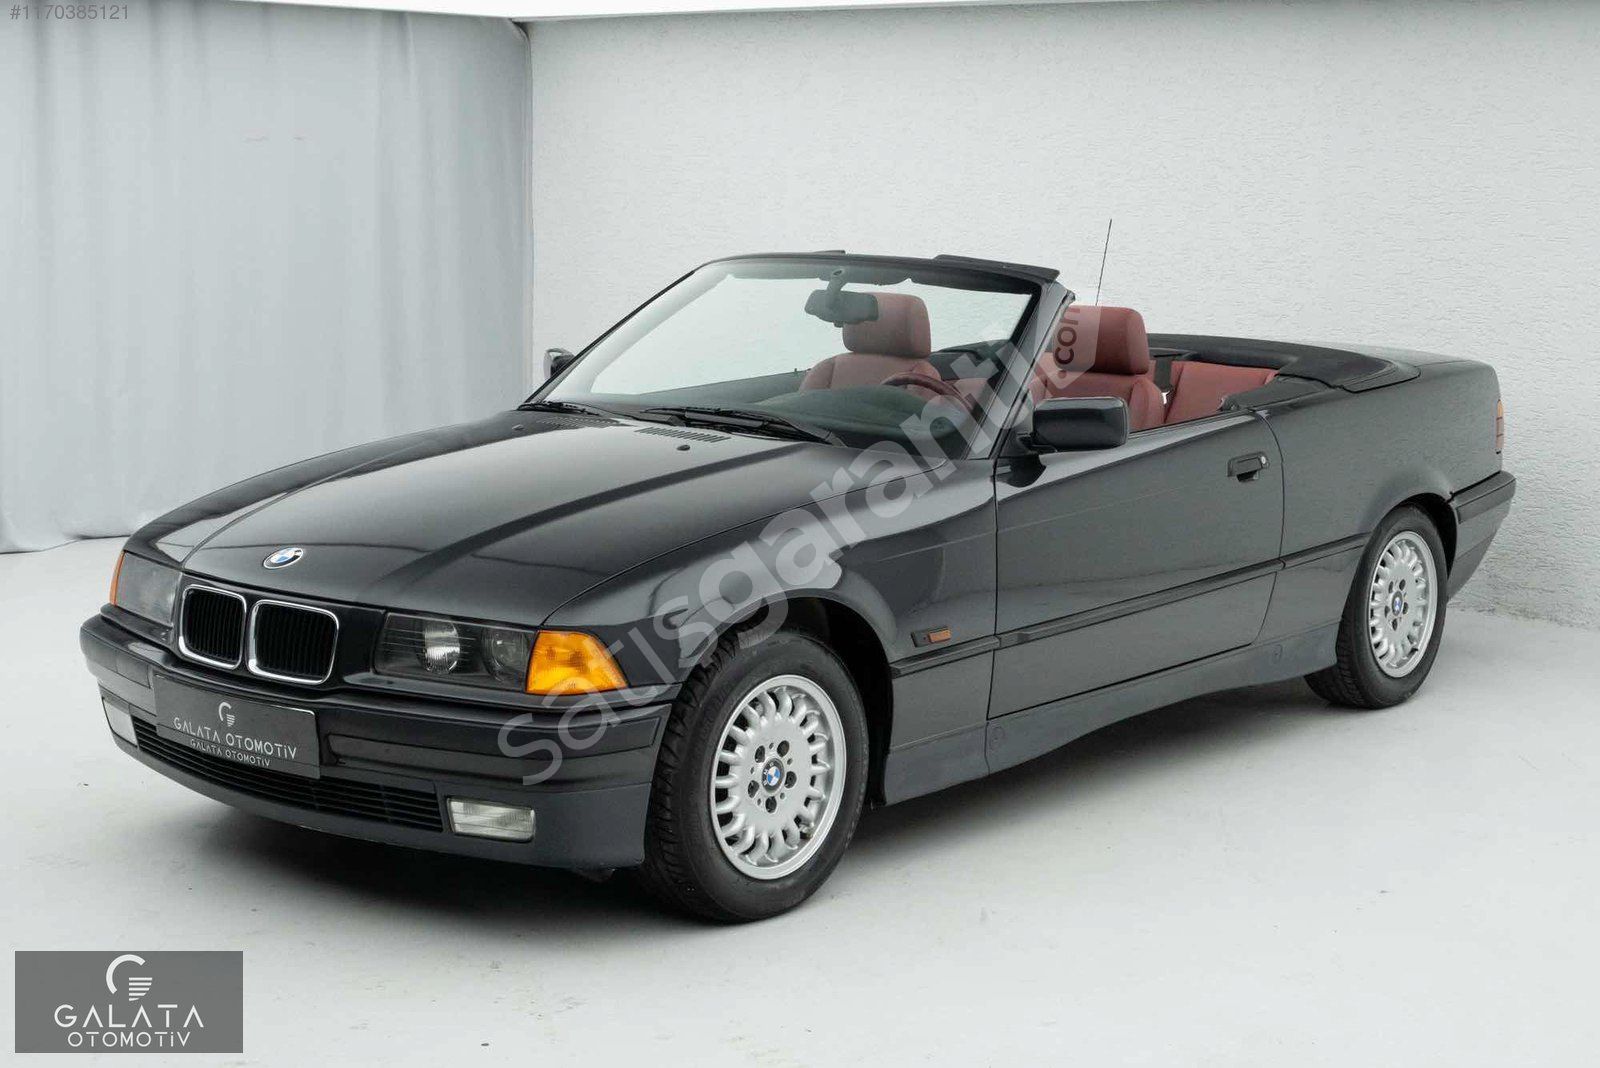 'GALATA' 1994 BMW E36 320I CABRIO